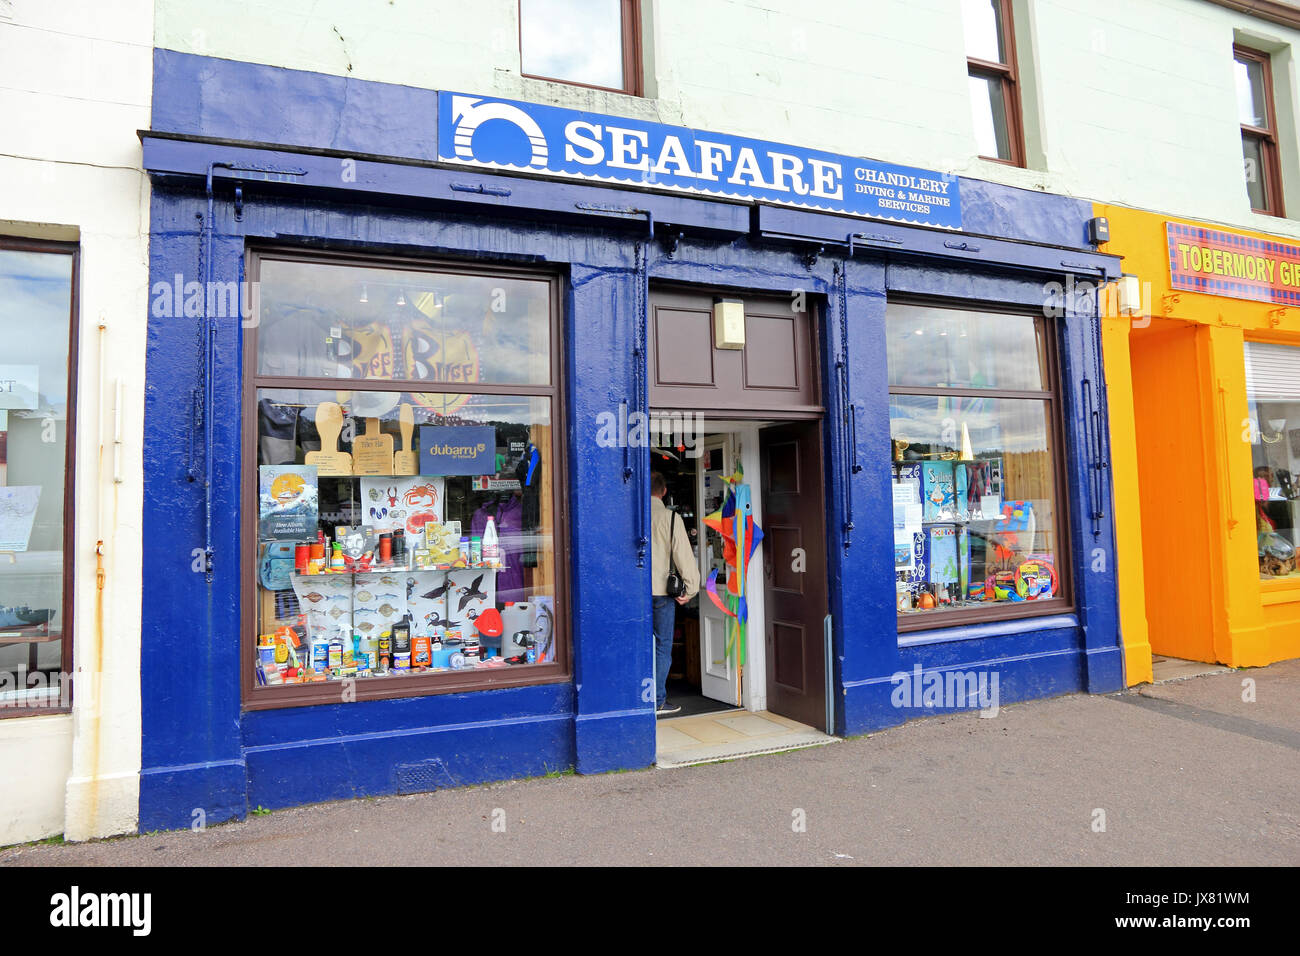 Seafare Chandlery, Immersioni Subacquee e Marine Services shop, Tobermory, Isle of Mull, Scozia Foto Stock